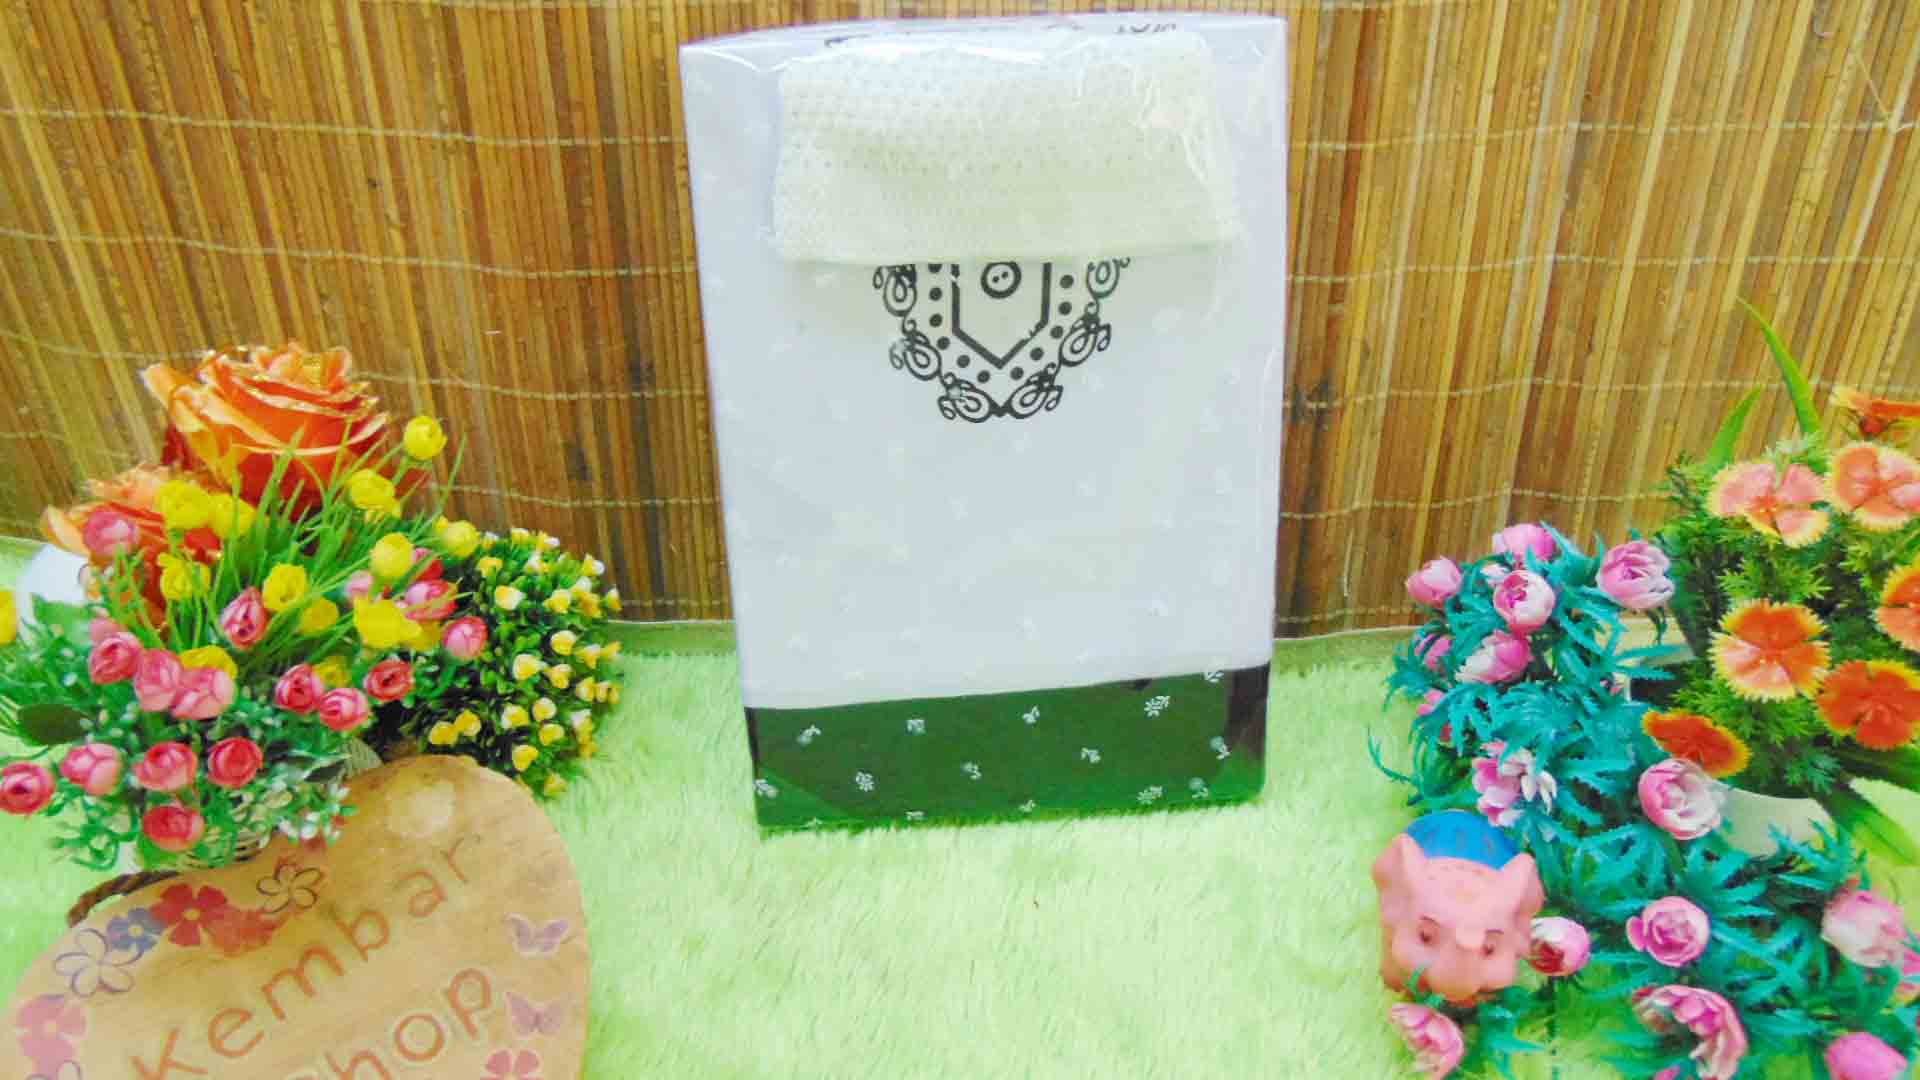 FREE KARTU UCAPAN paket kado lahiran bayi baby gift set box Romper bayi muslim Plus peci Aneka Warna (4)